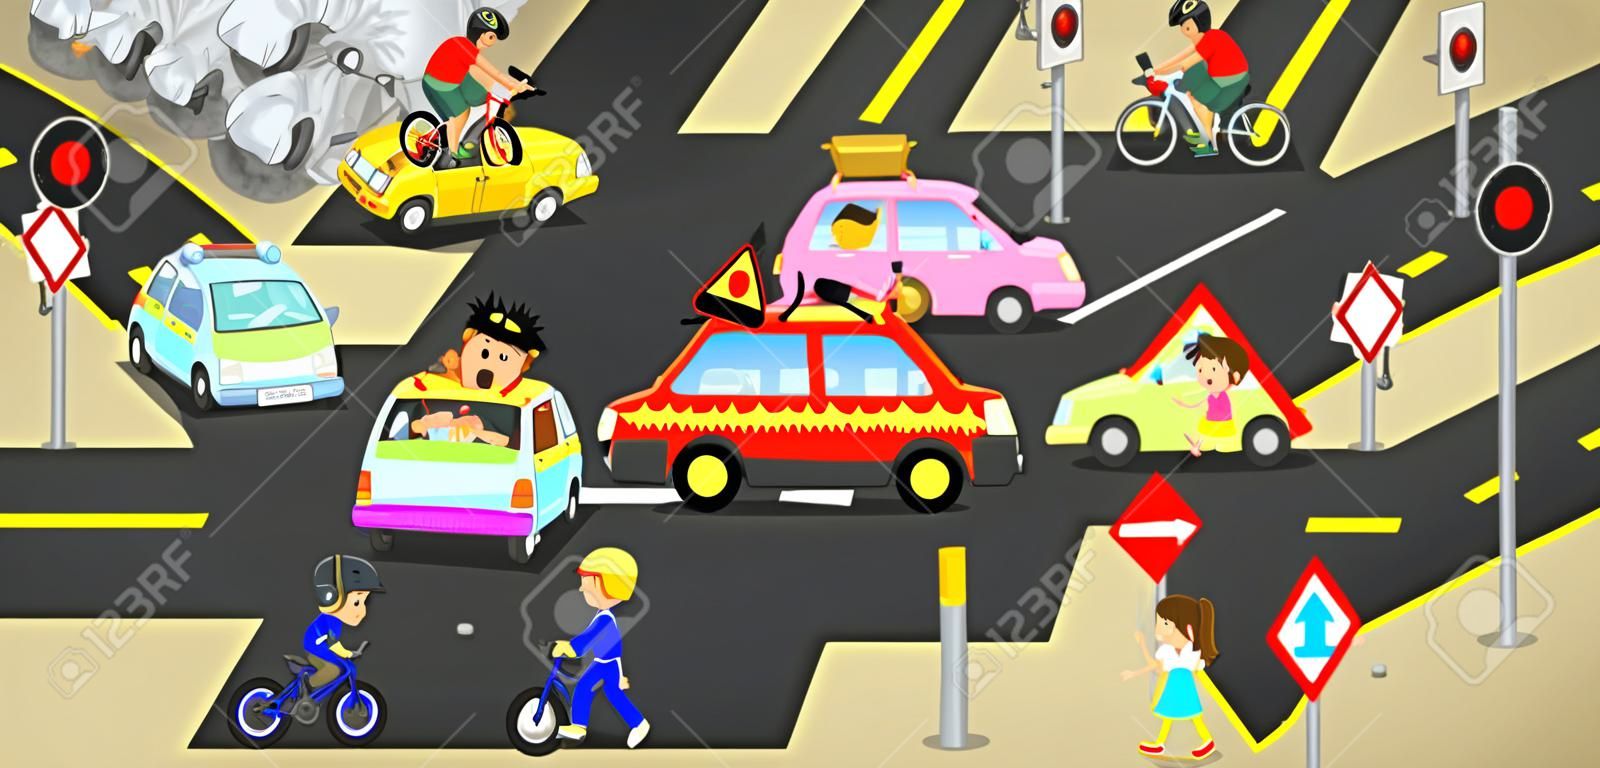 Acidentes, lesões, perigo e cautela de segurança em veículos rodoviários de trânsito causam por carros de bicicleta e pessoas descuidados na rua urbana com sinal e símbolo no conceito de desenho animado engraçado bonito para crianças, criar por vetor